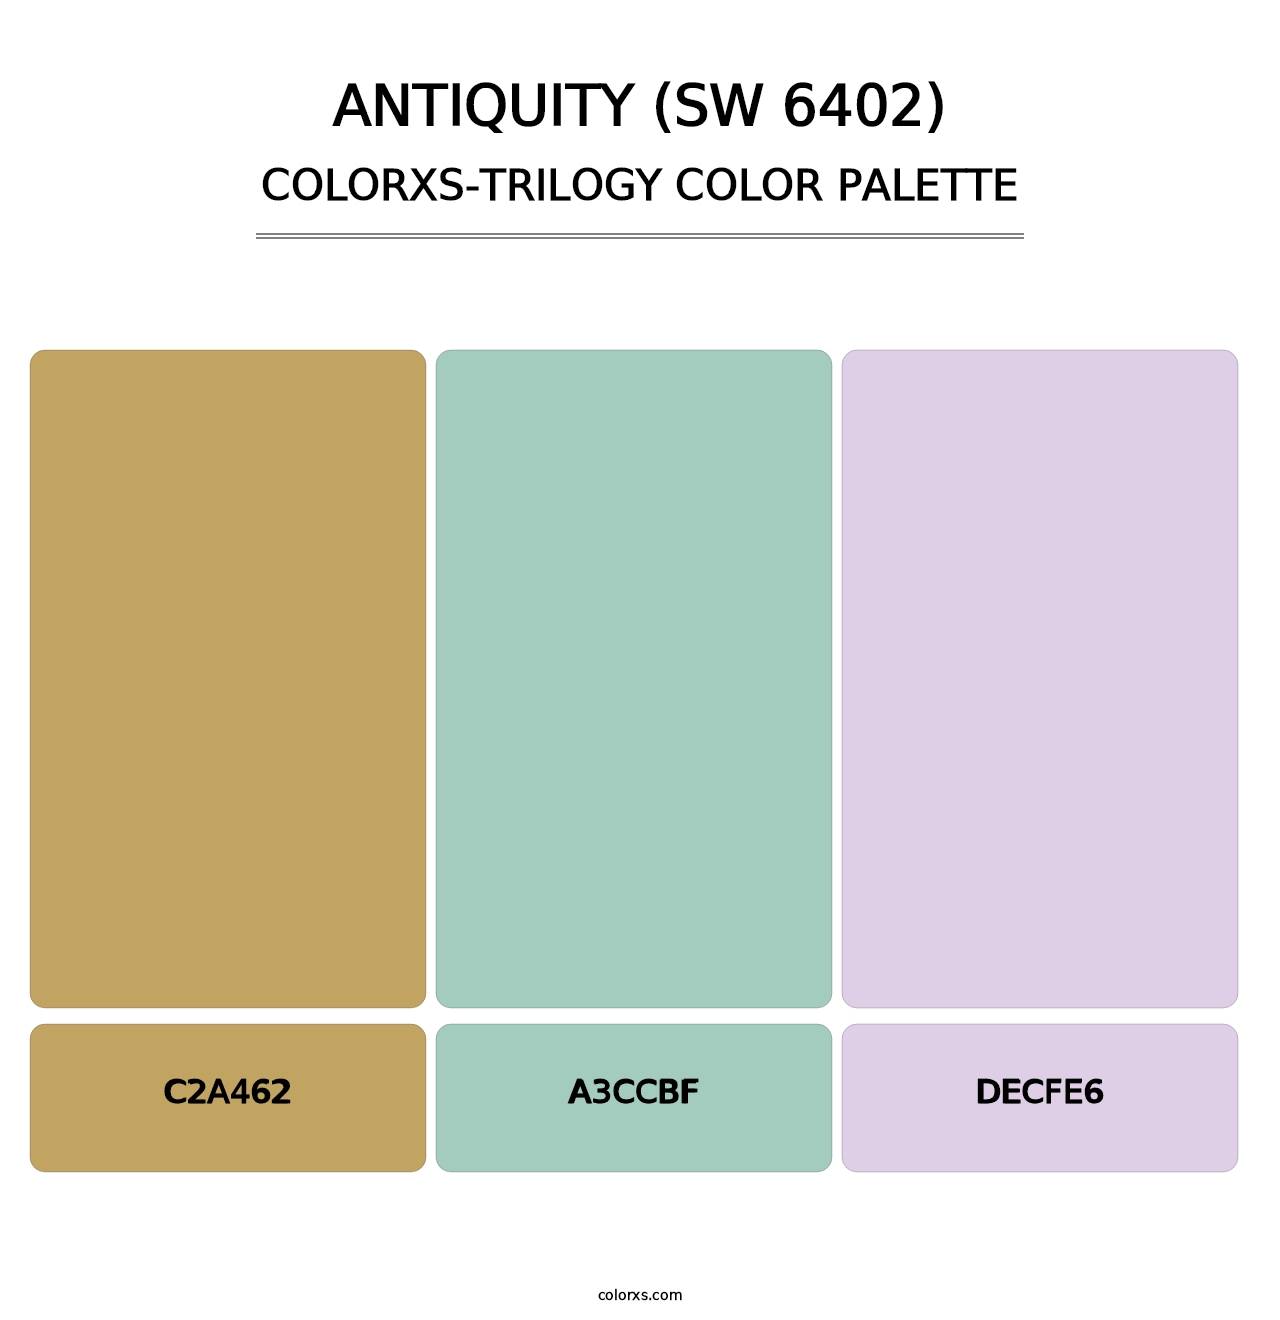 Antiquity (SW 6402) - Colorxs Trilogy Palette